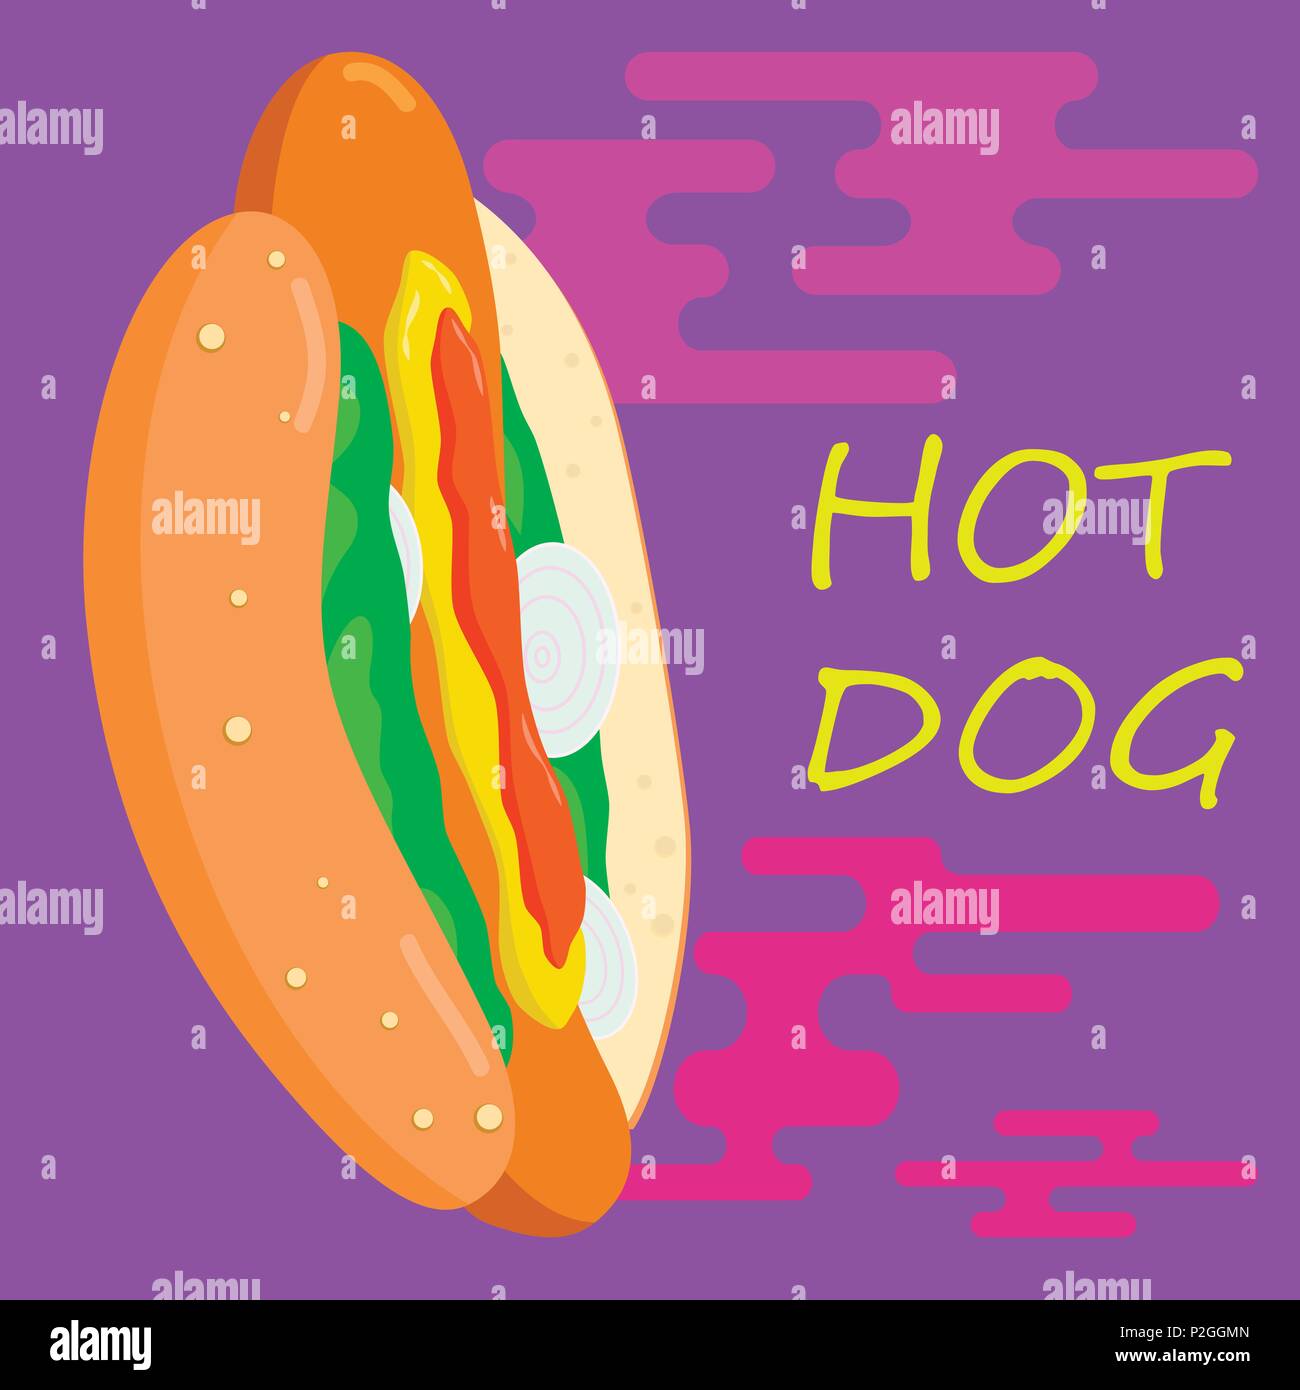 Hot Dog poster design. Cucina di strada illustrazione. Illustrazione Vettoriale